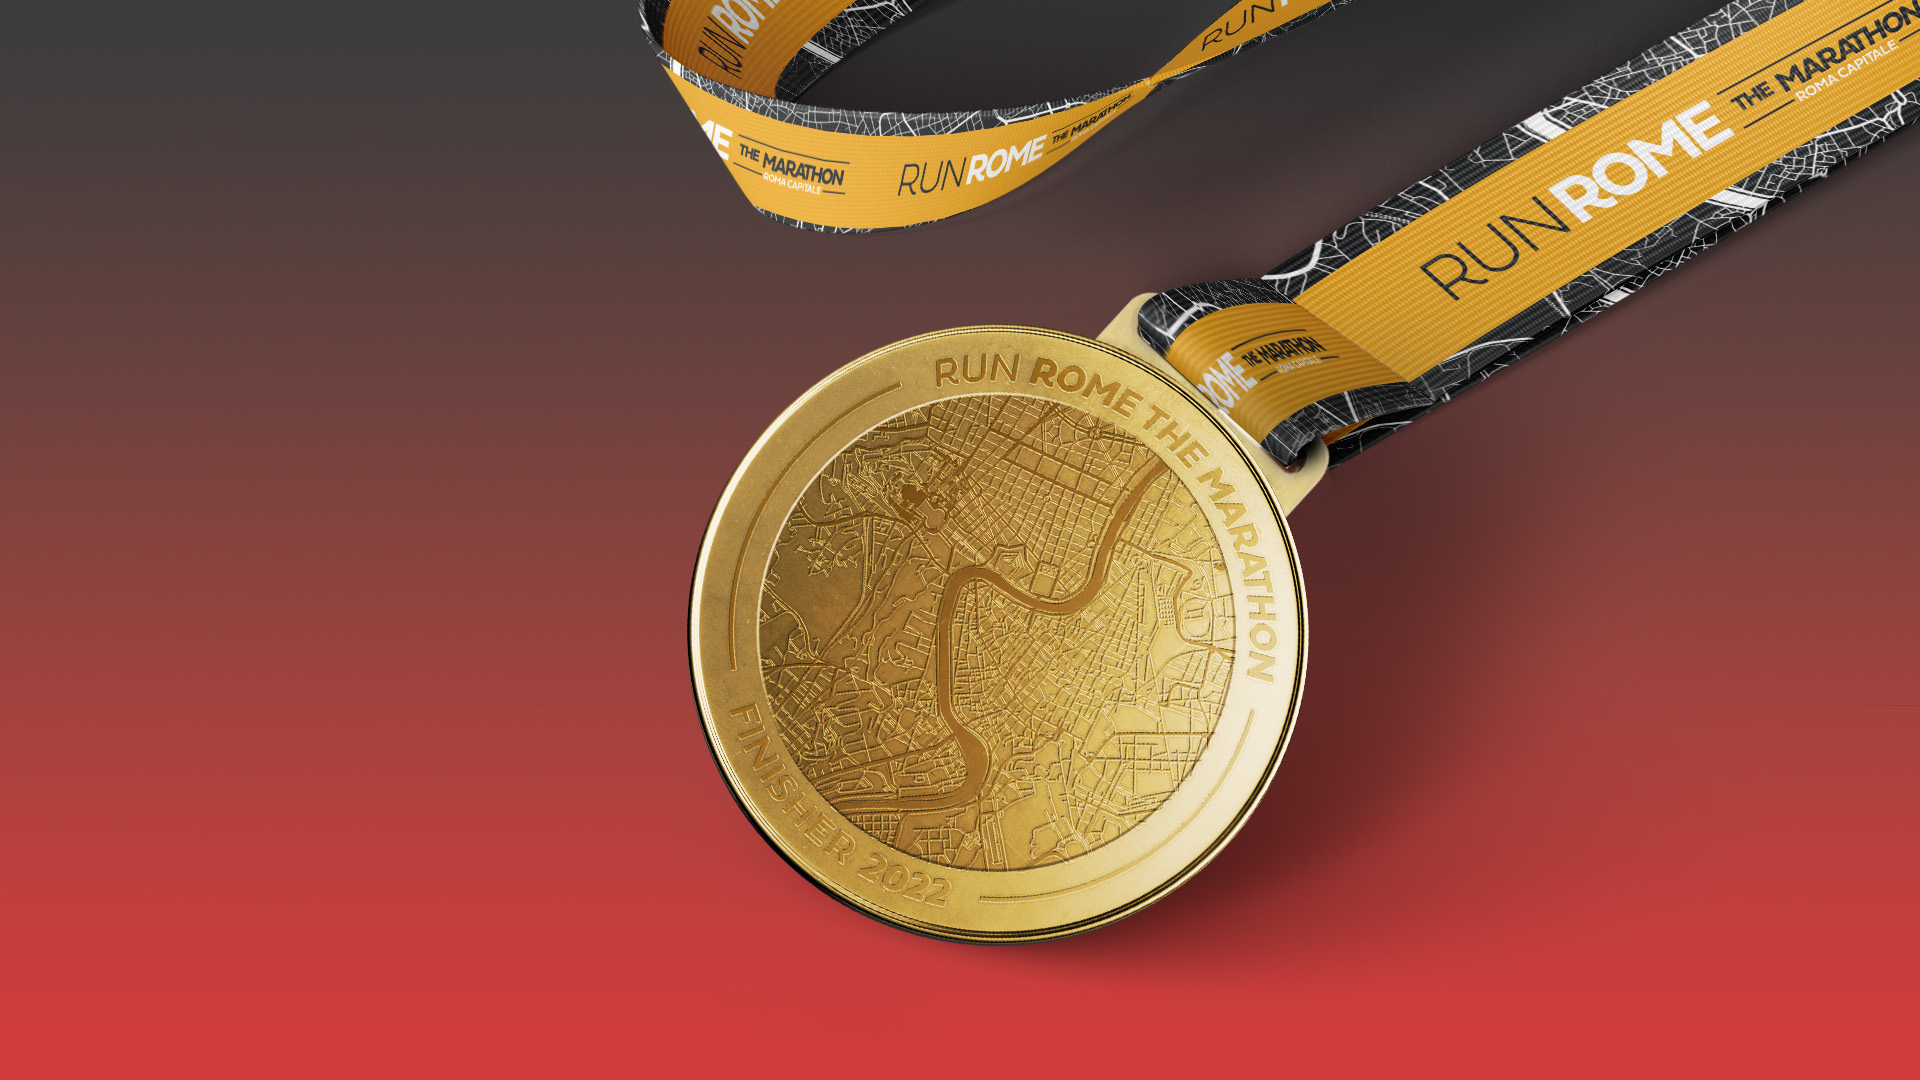 The three medals of Acea Run Rome The Marathon